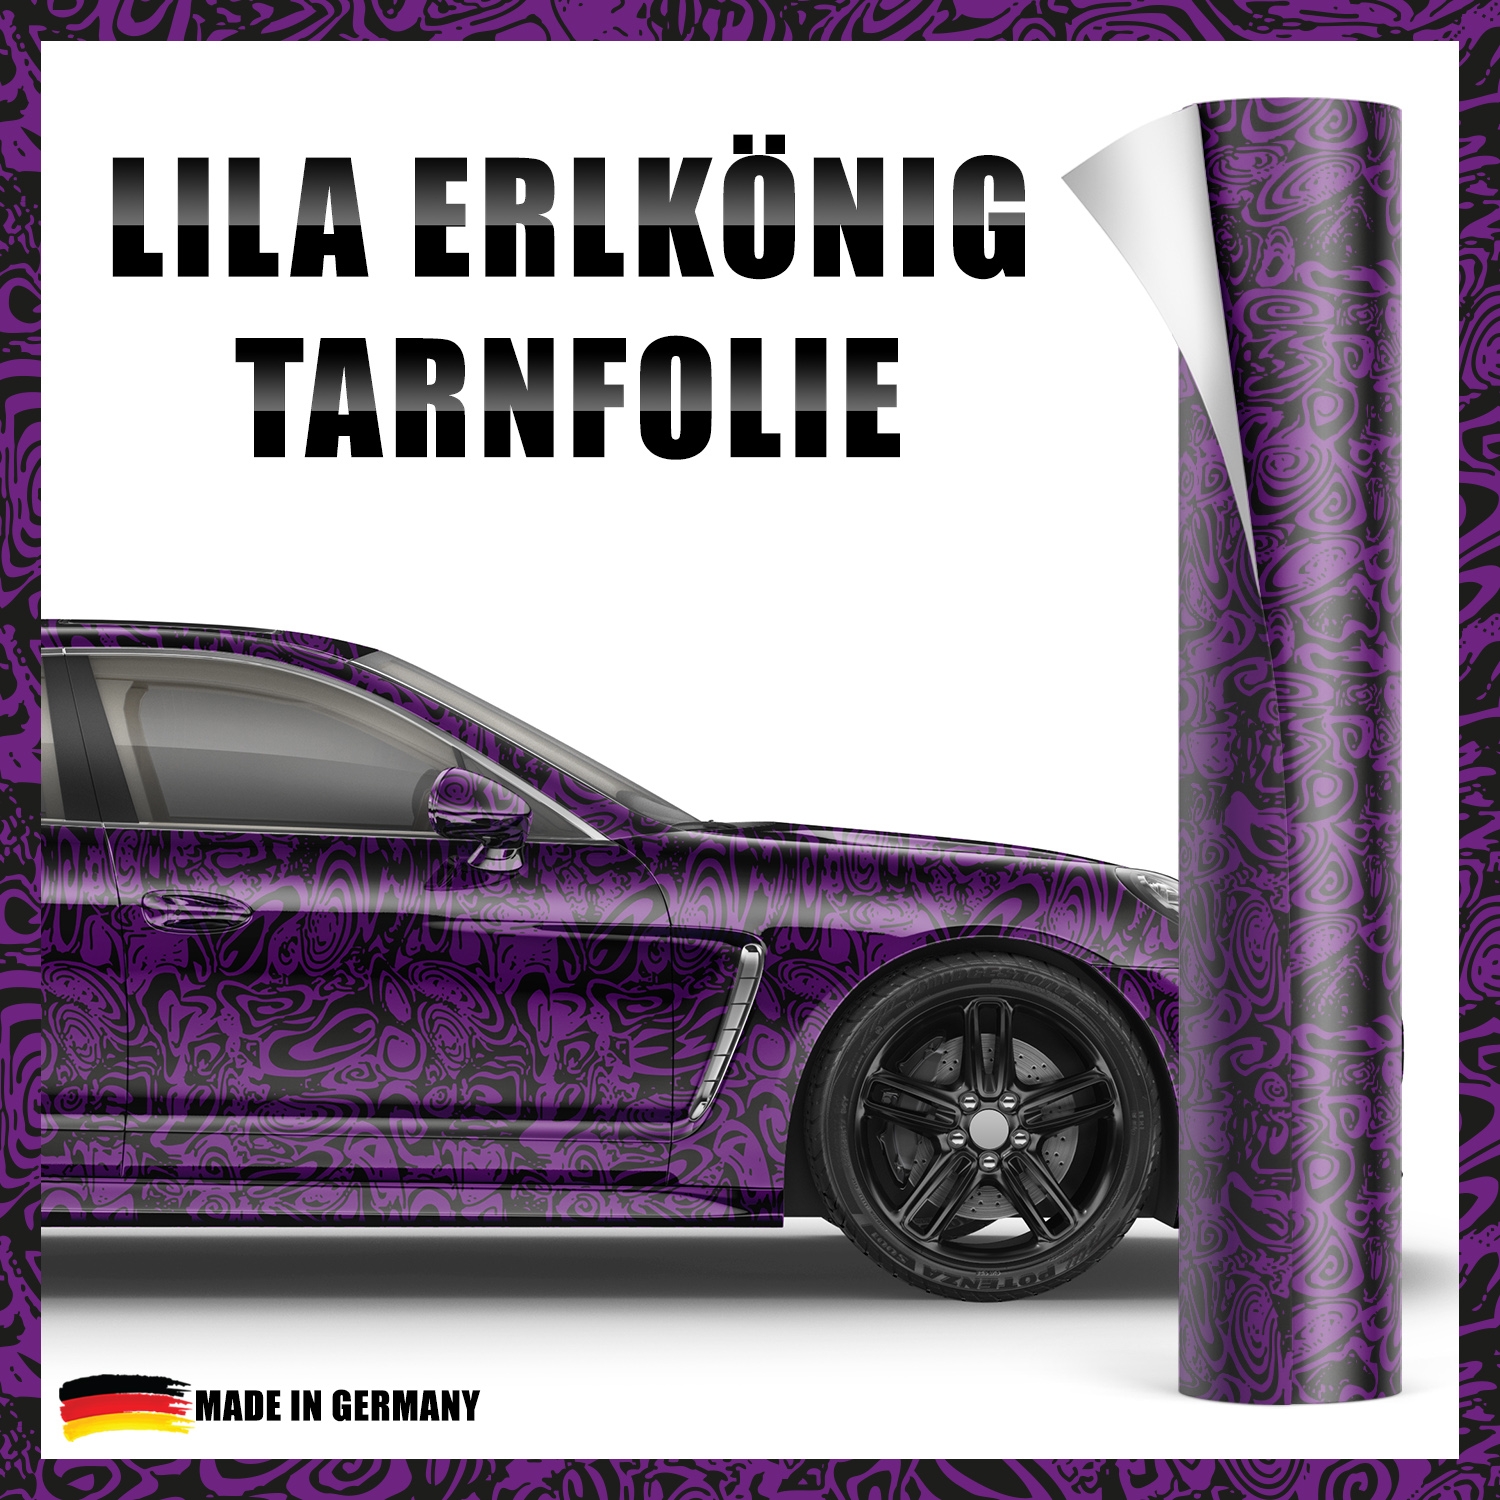 Erlkönig Tarnfolie - Car Wrap Folie Design #003 — Autoaufkleber 24 -  carstyling and more